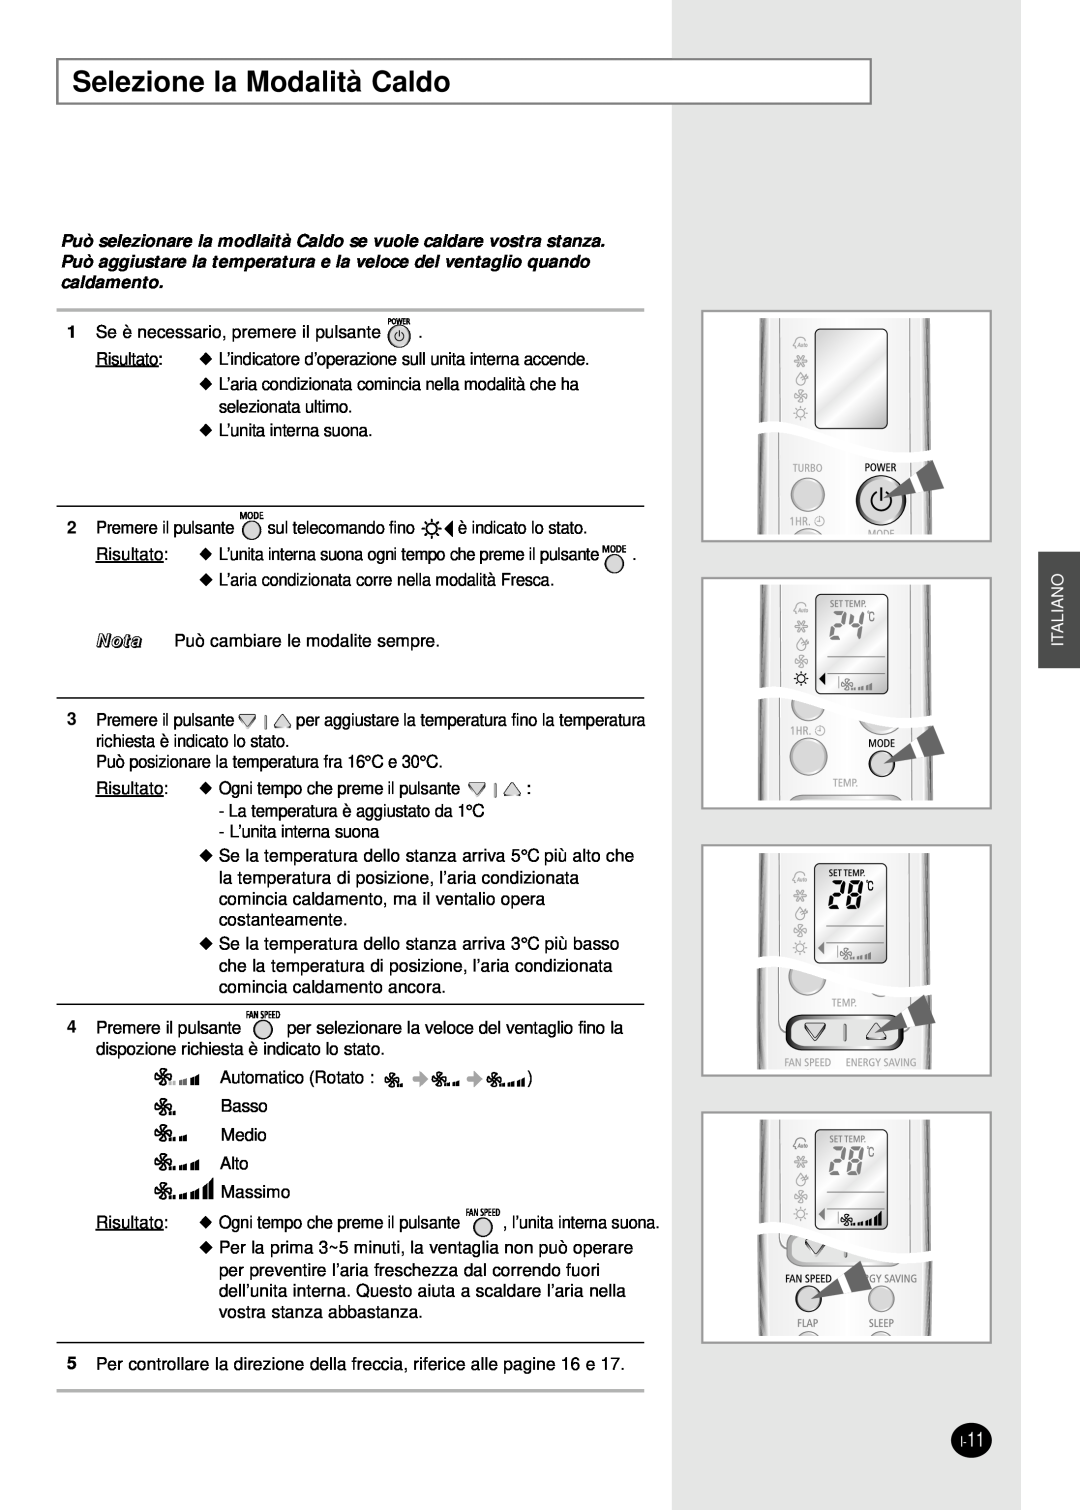 Samsung SH24AW6X, SH18AW6X manual Selezione la Modalità Caldo, Italiano 